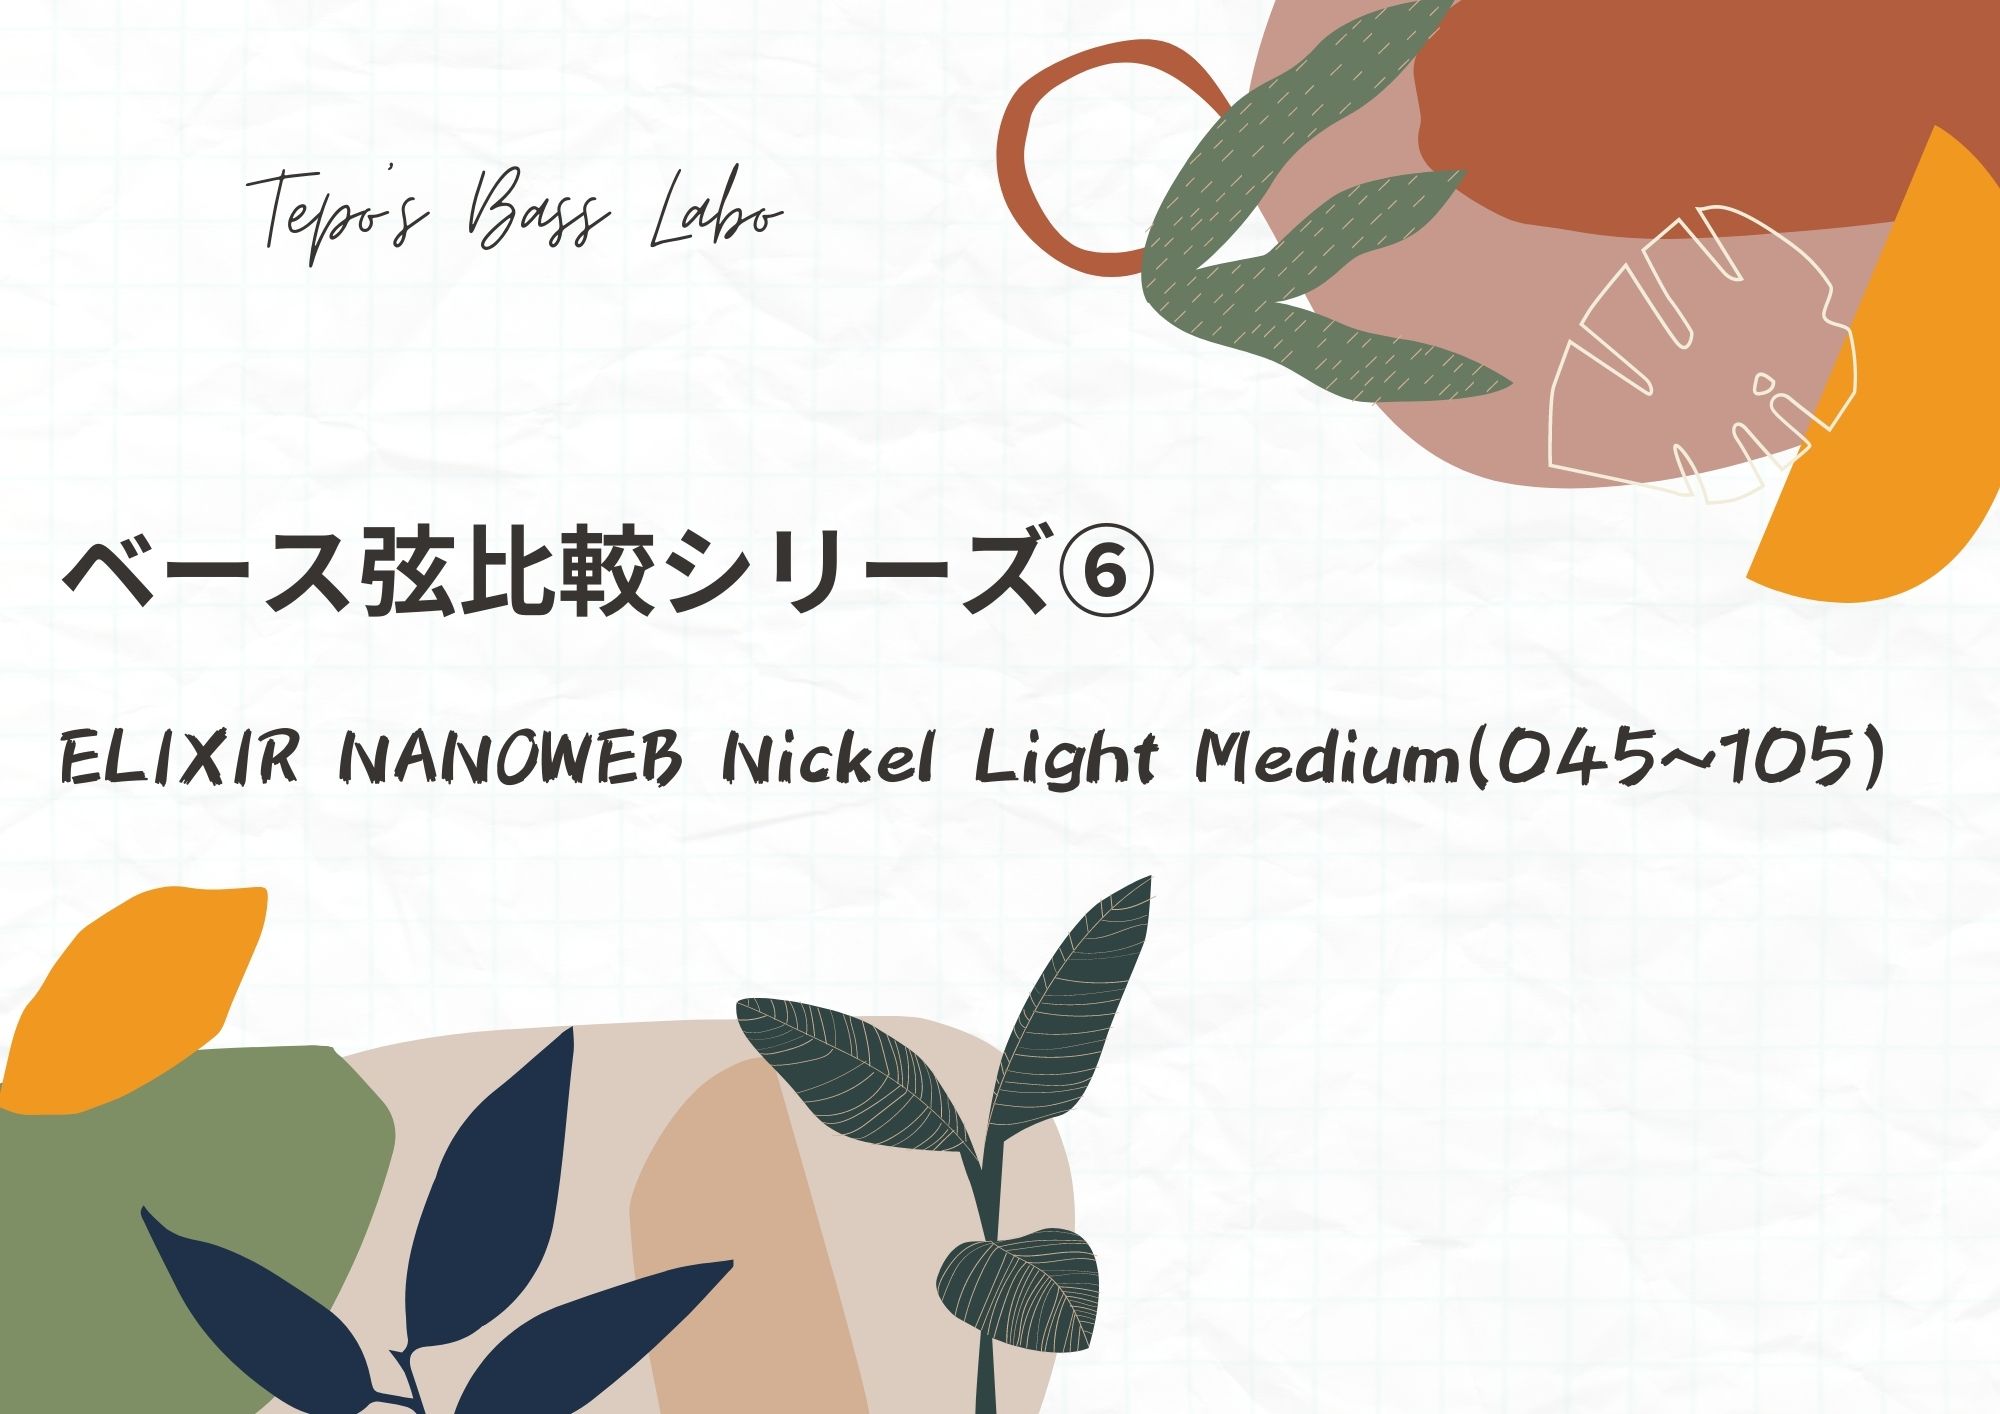 市場 Elixir NANOWEB ベース弦 エリクサー Nickel